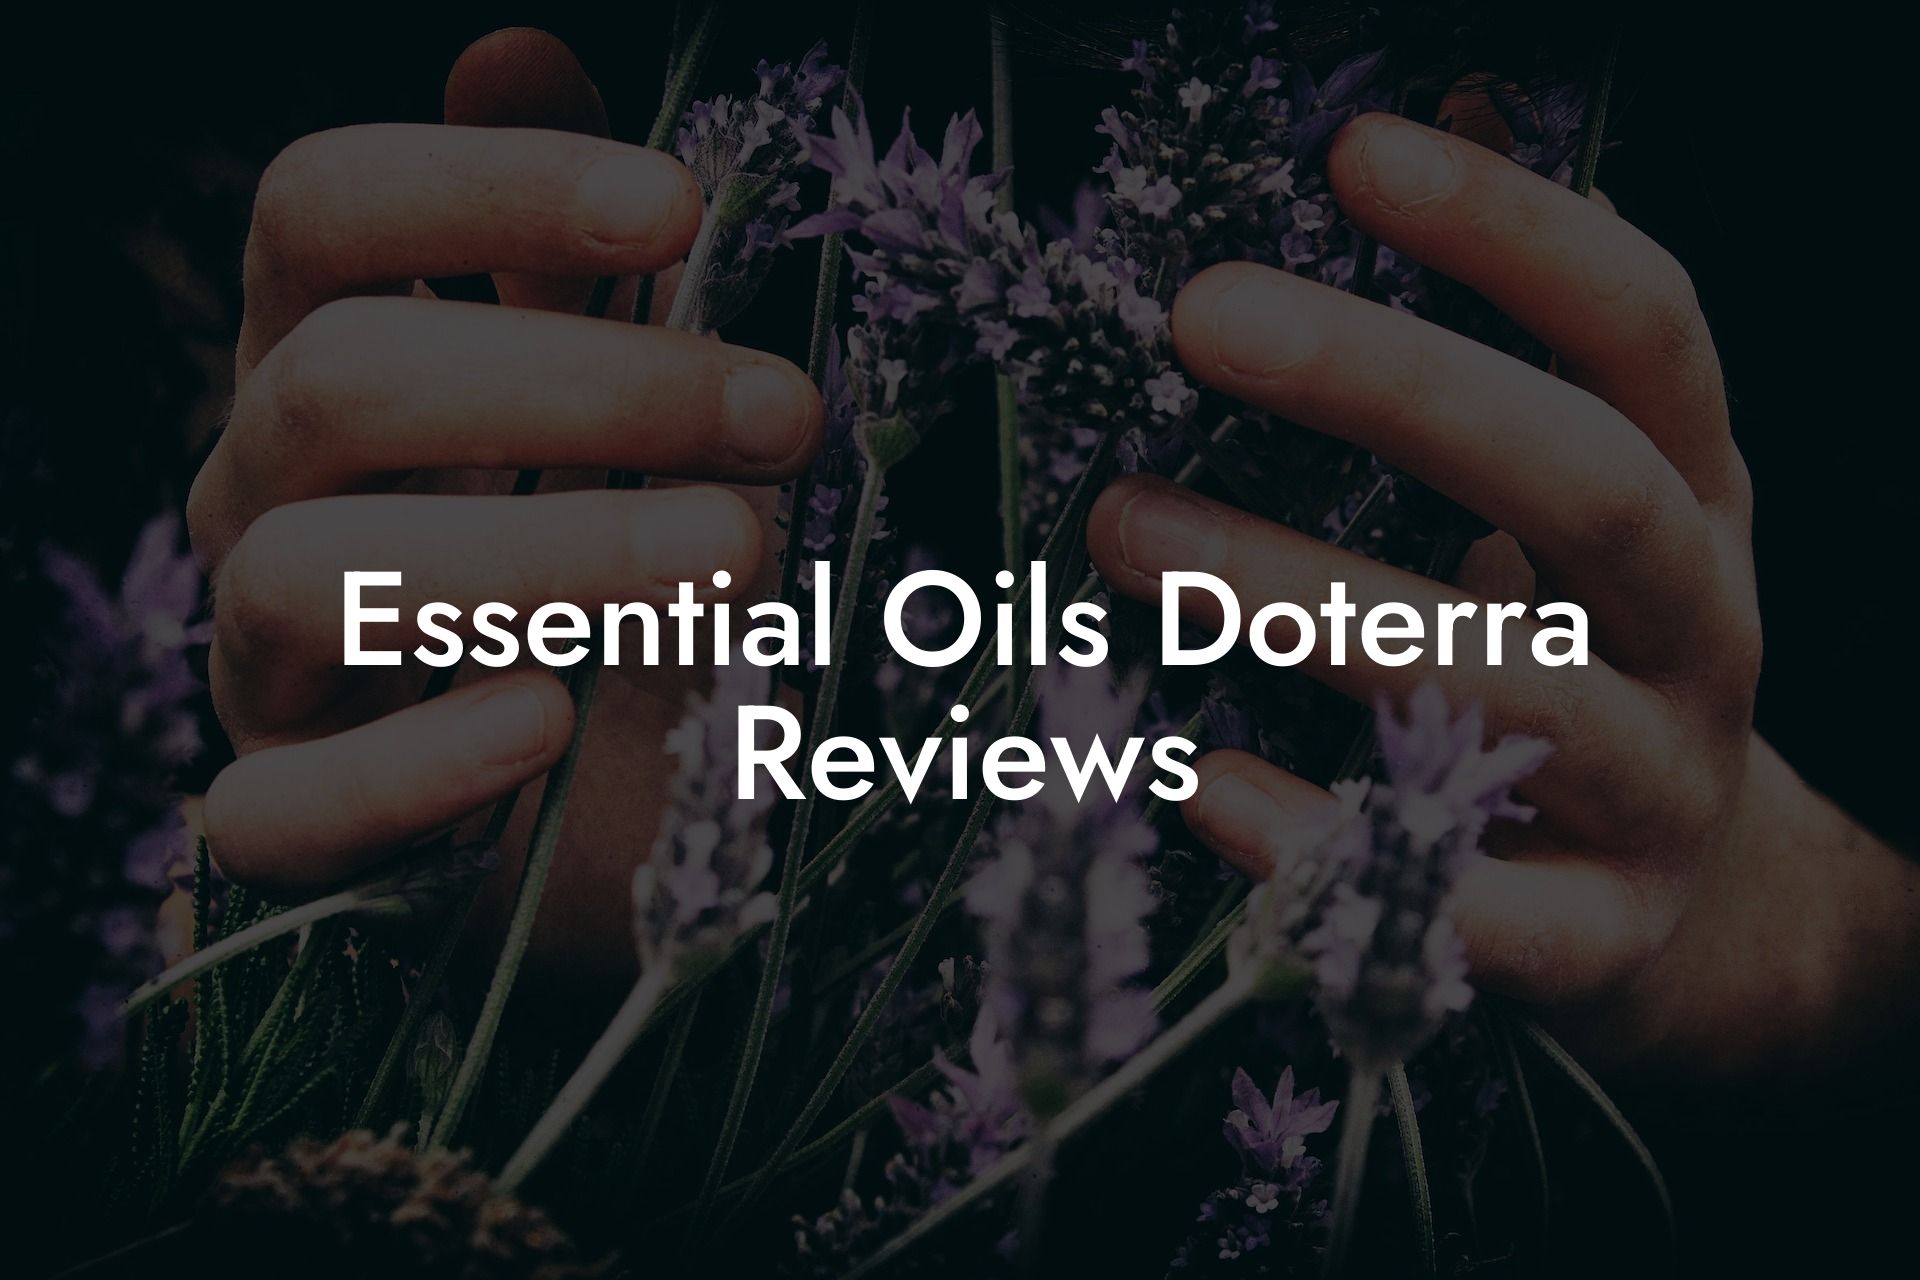 Essential Oils Doterra Reviews